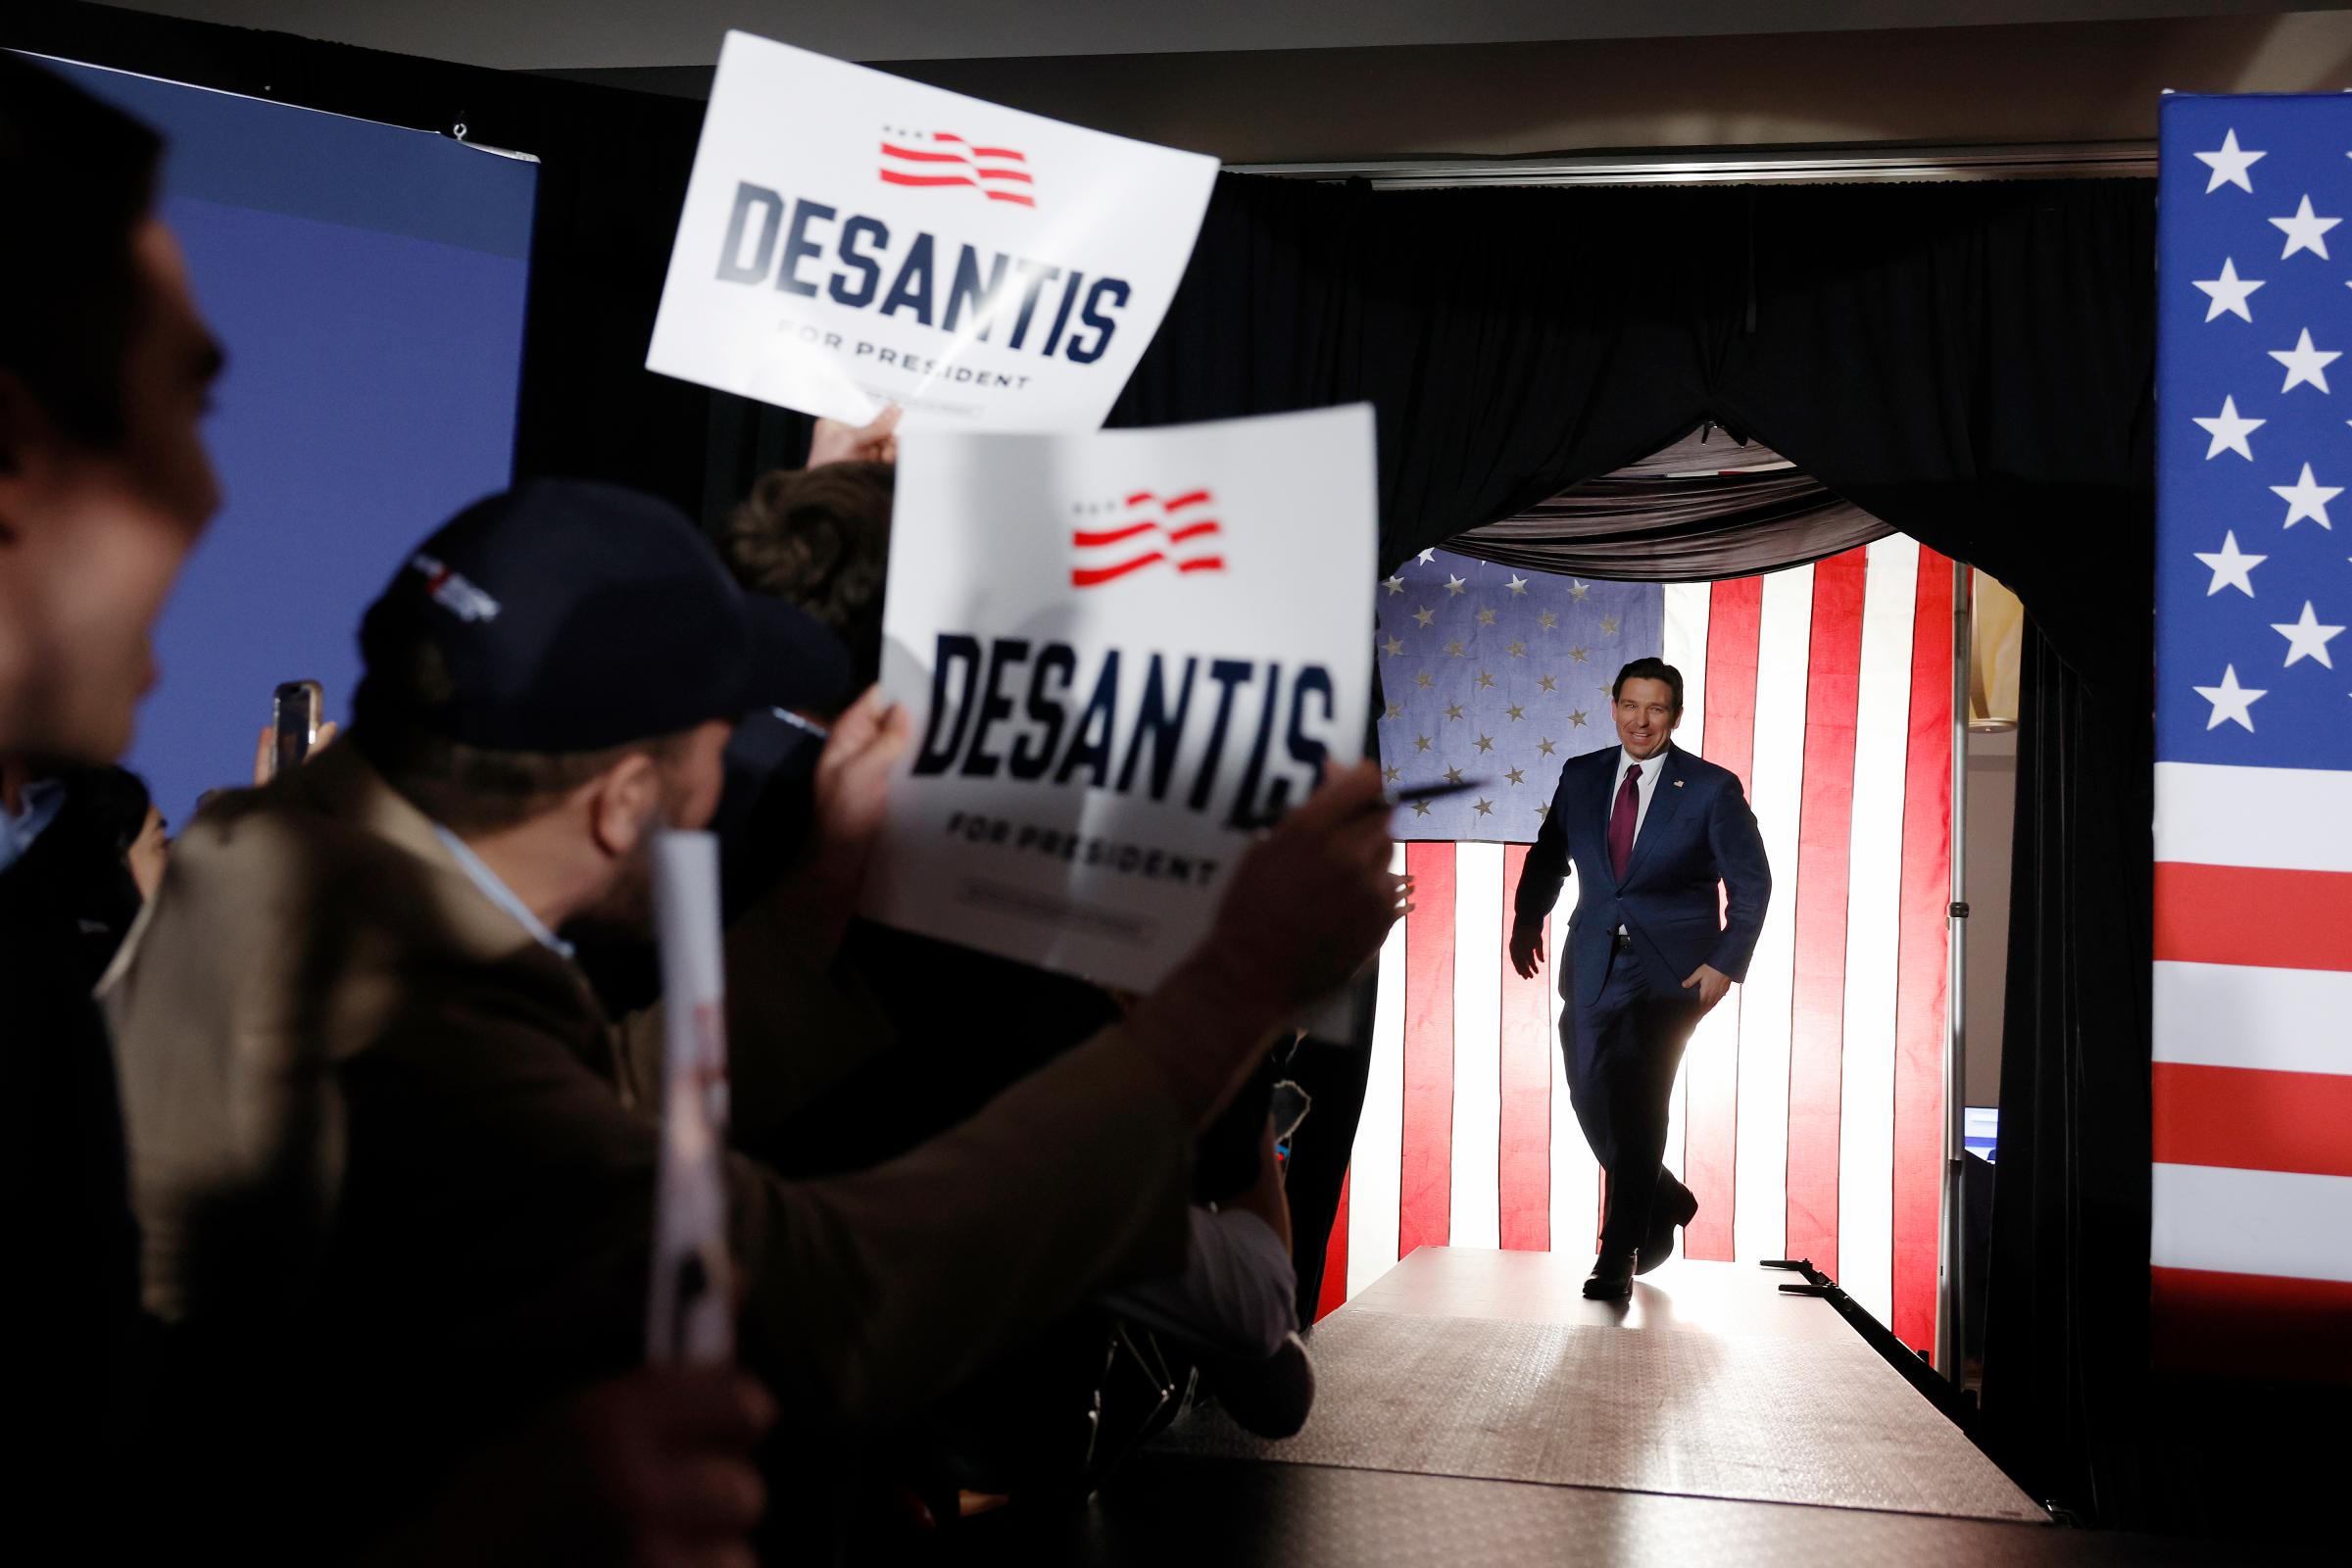 Ron DeSantis Holds His Caucus Night Event In Iowa